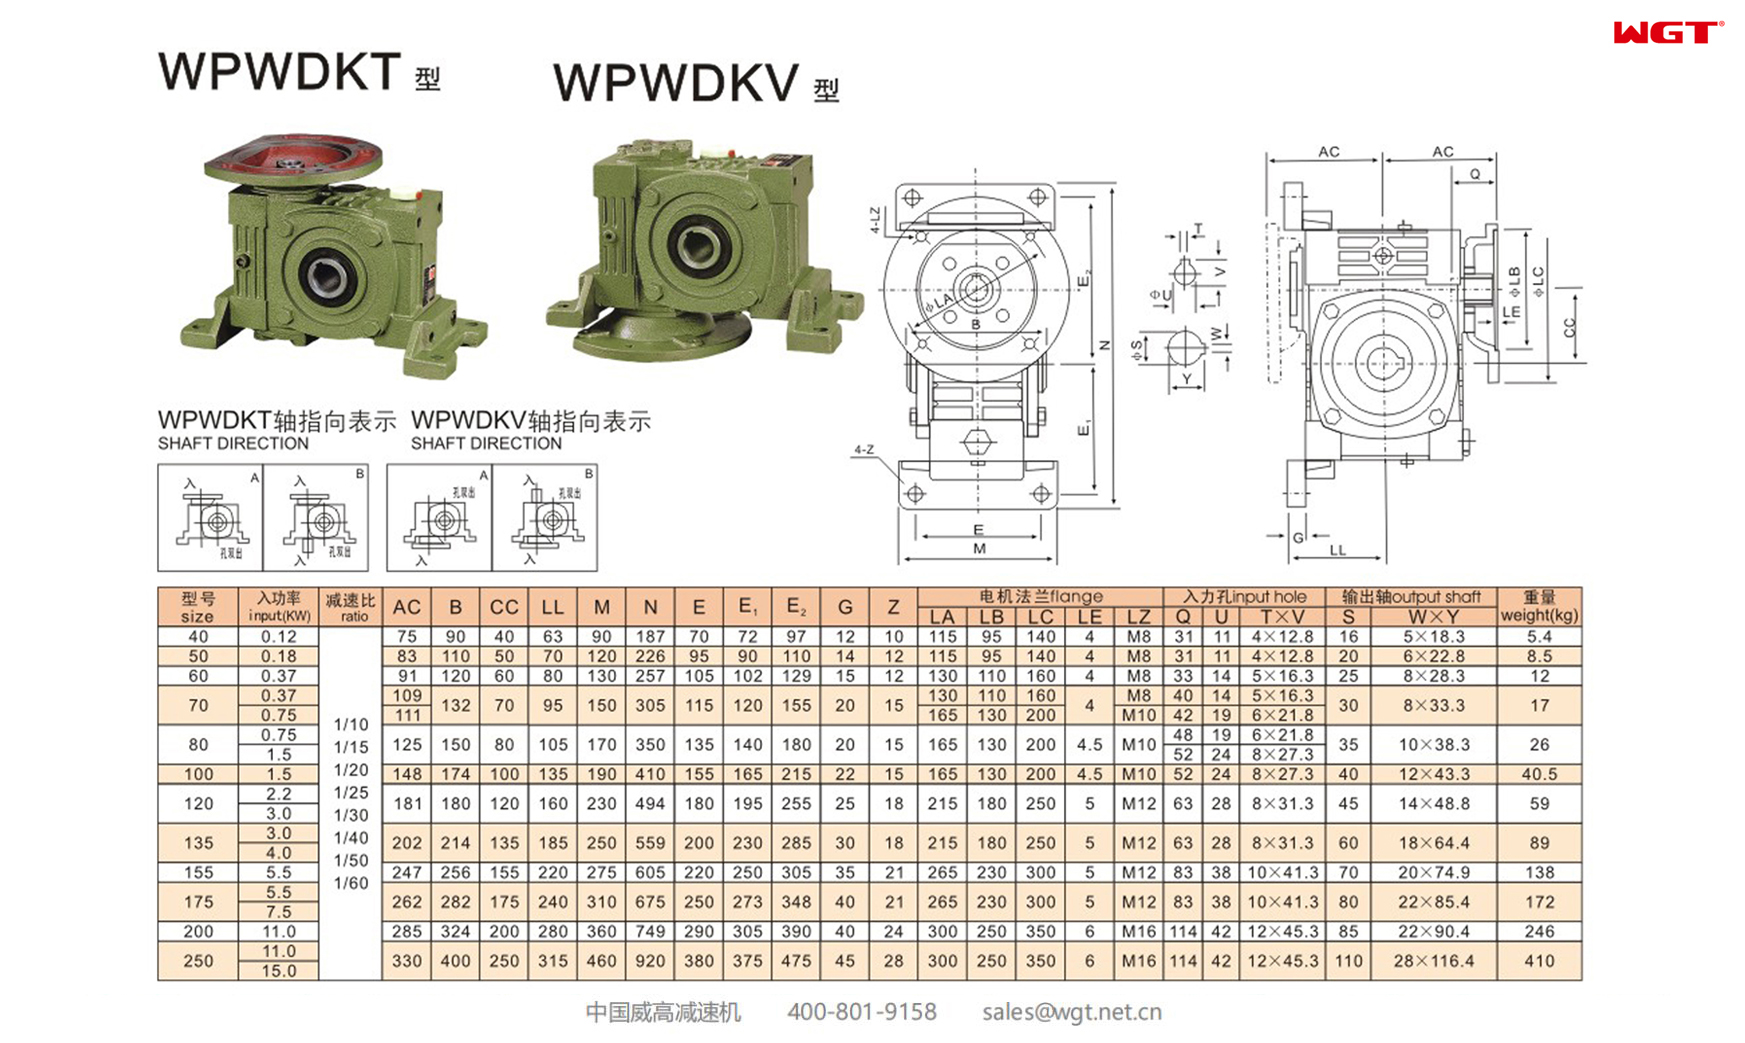 WPWDKT WPWDKV80 Worm Gear Reducer UNIVERSAL SPEED REDUCER